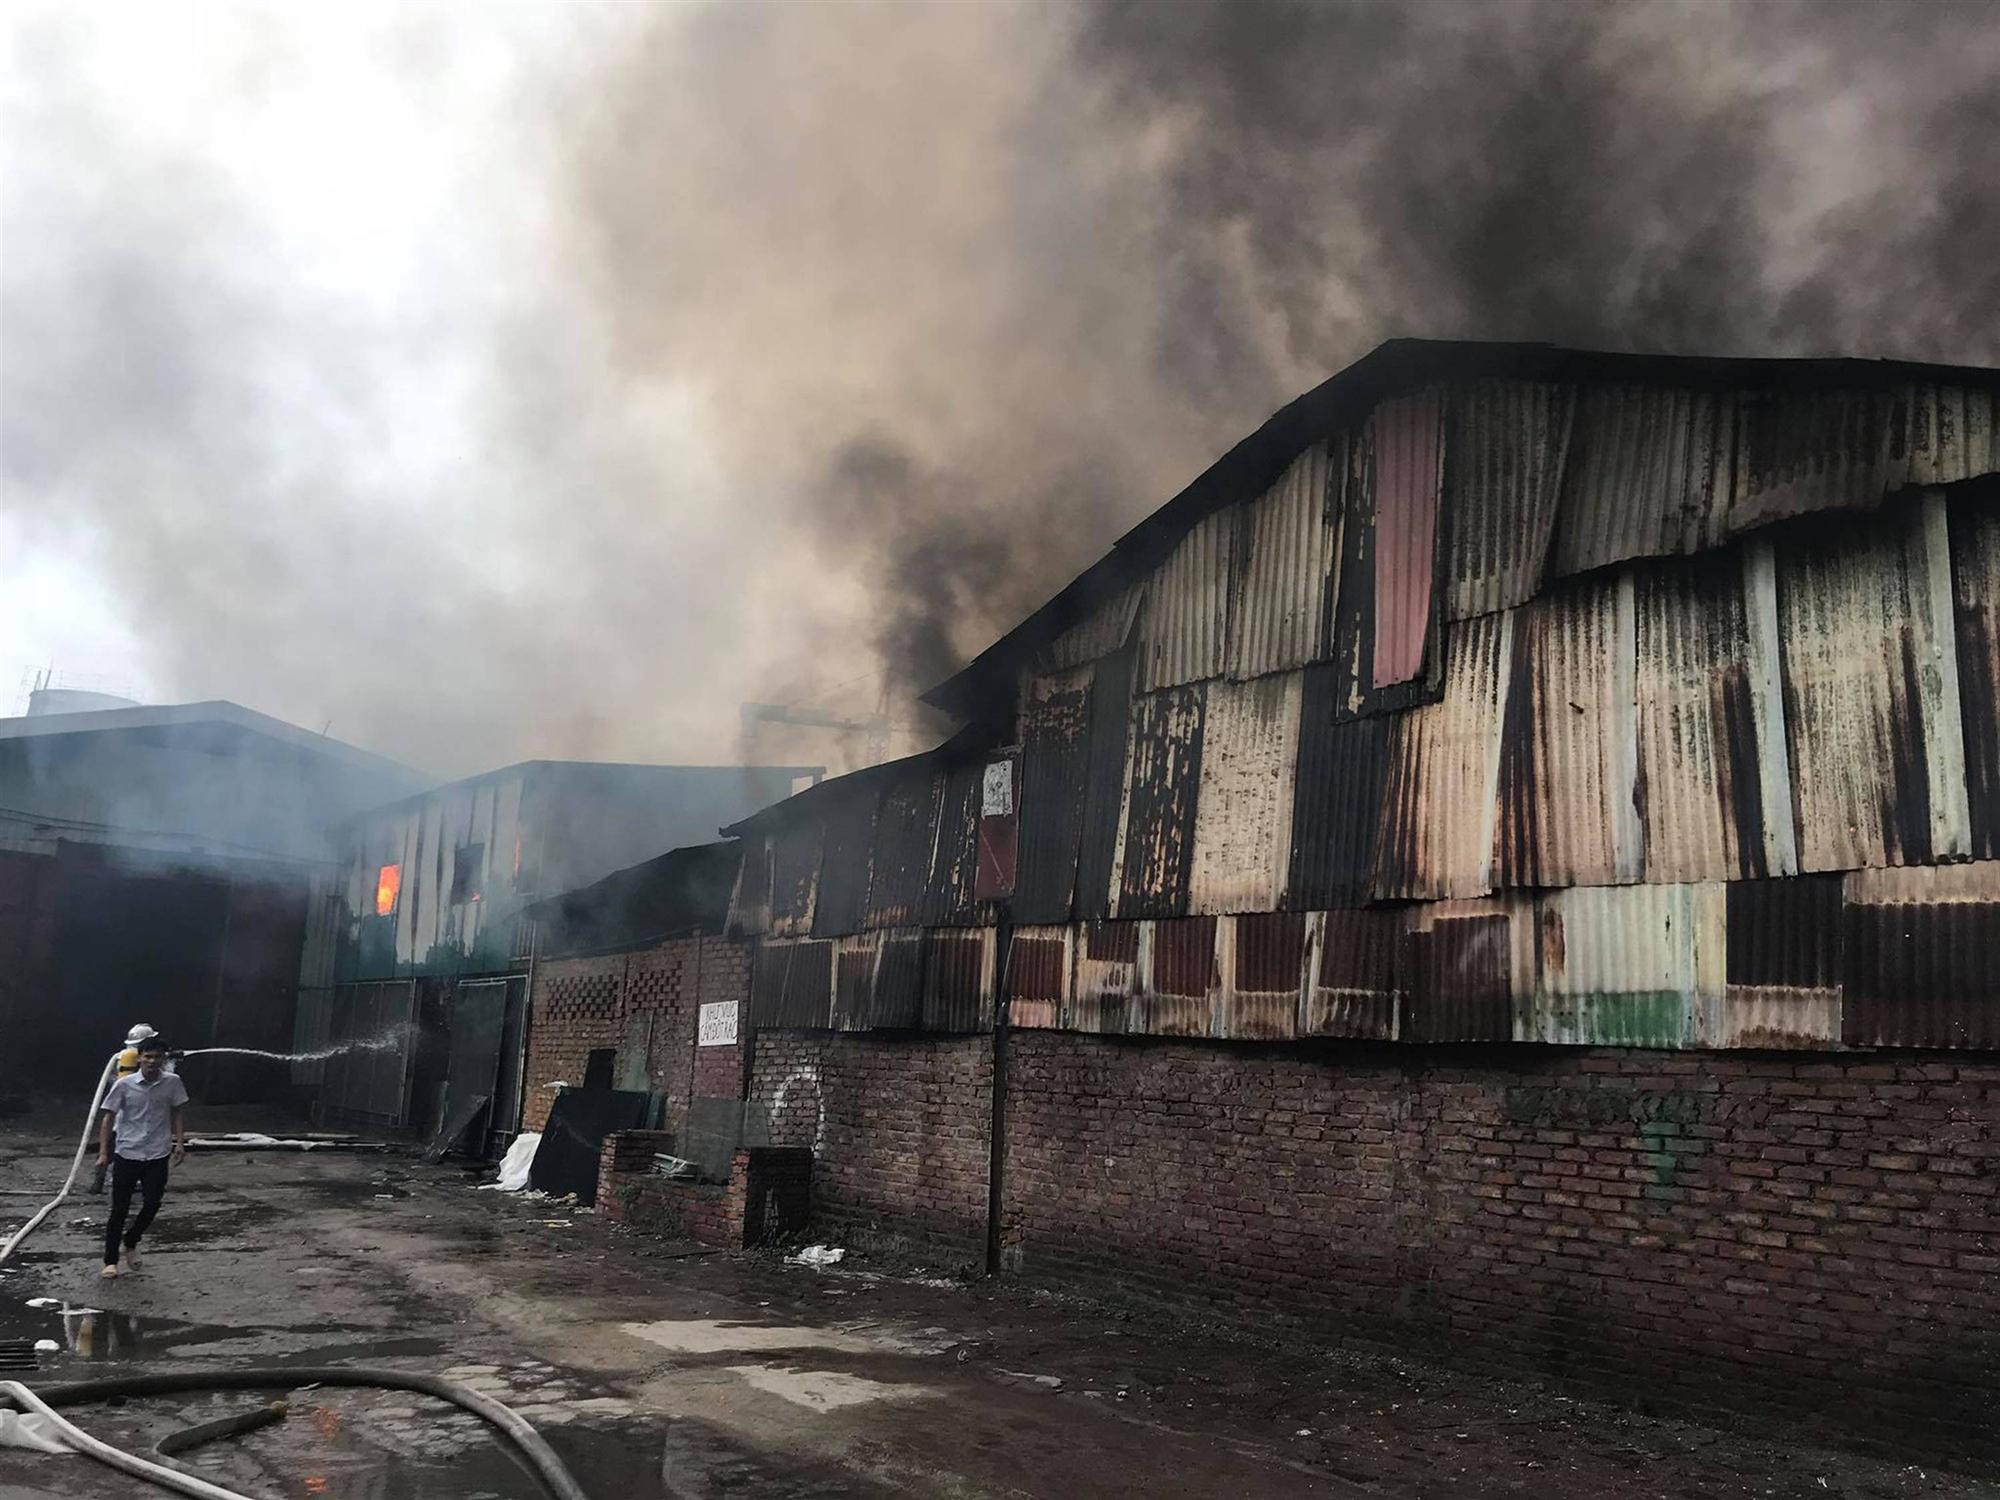 Hà Nội: Cháy khu nhà kho gần Bến xe Nước Ngầm, người dân cố gắng giải cứu chiếc xe hiệu Ford Ranger-6